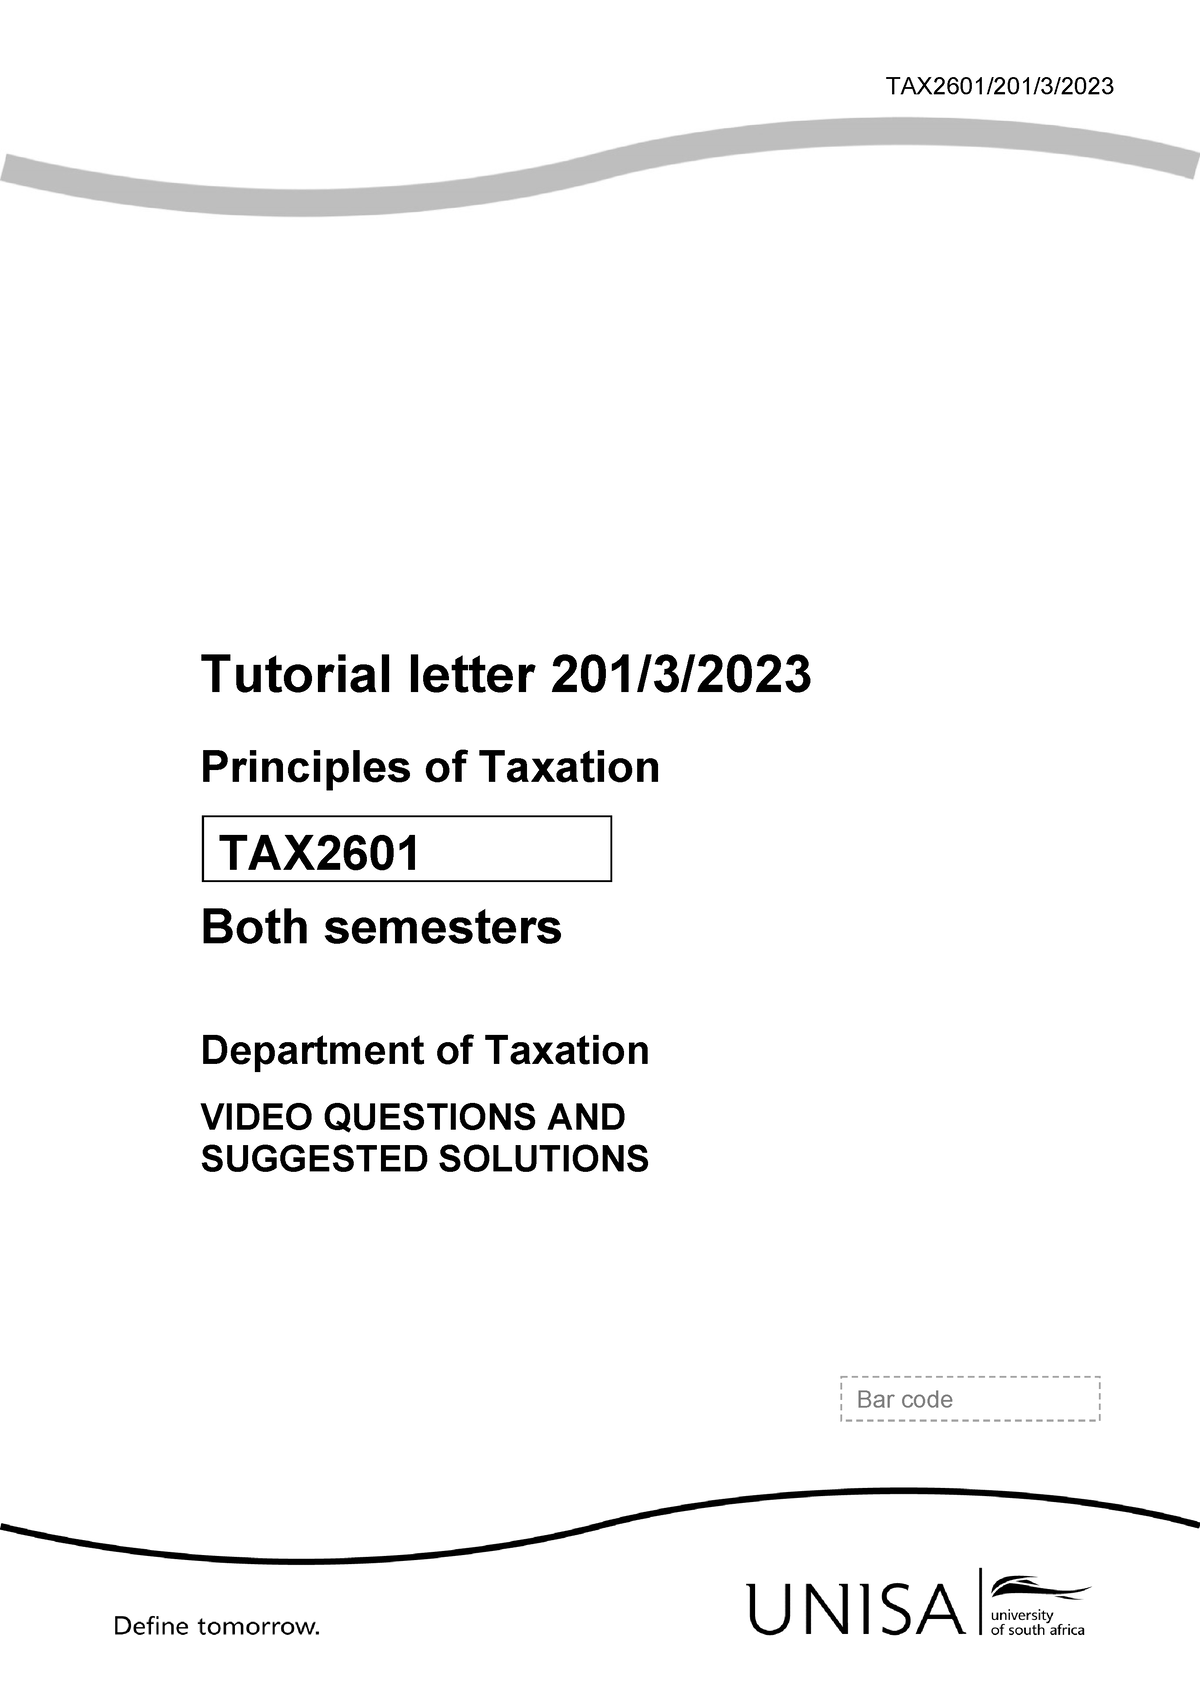 tax2601 assignment 3 semester 1 2023